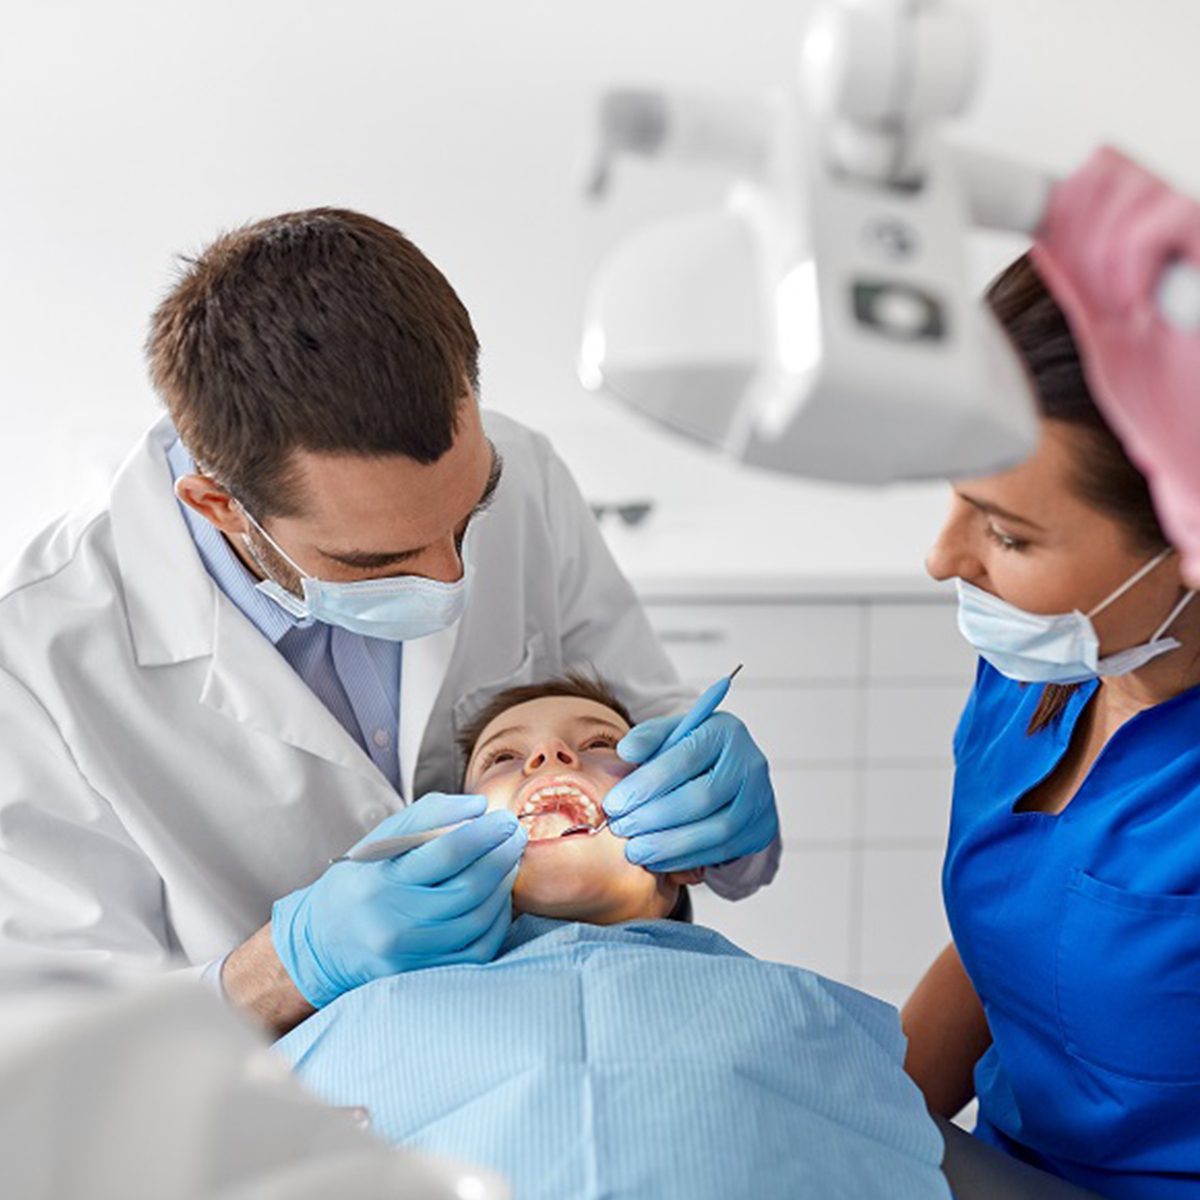 Odontoiatria professionale Reggio Emilia | Poliambulatorio C.T.R.